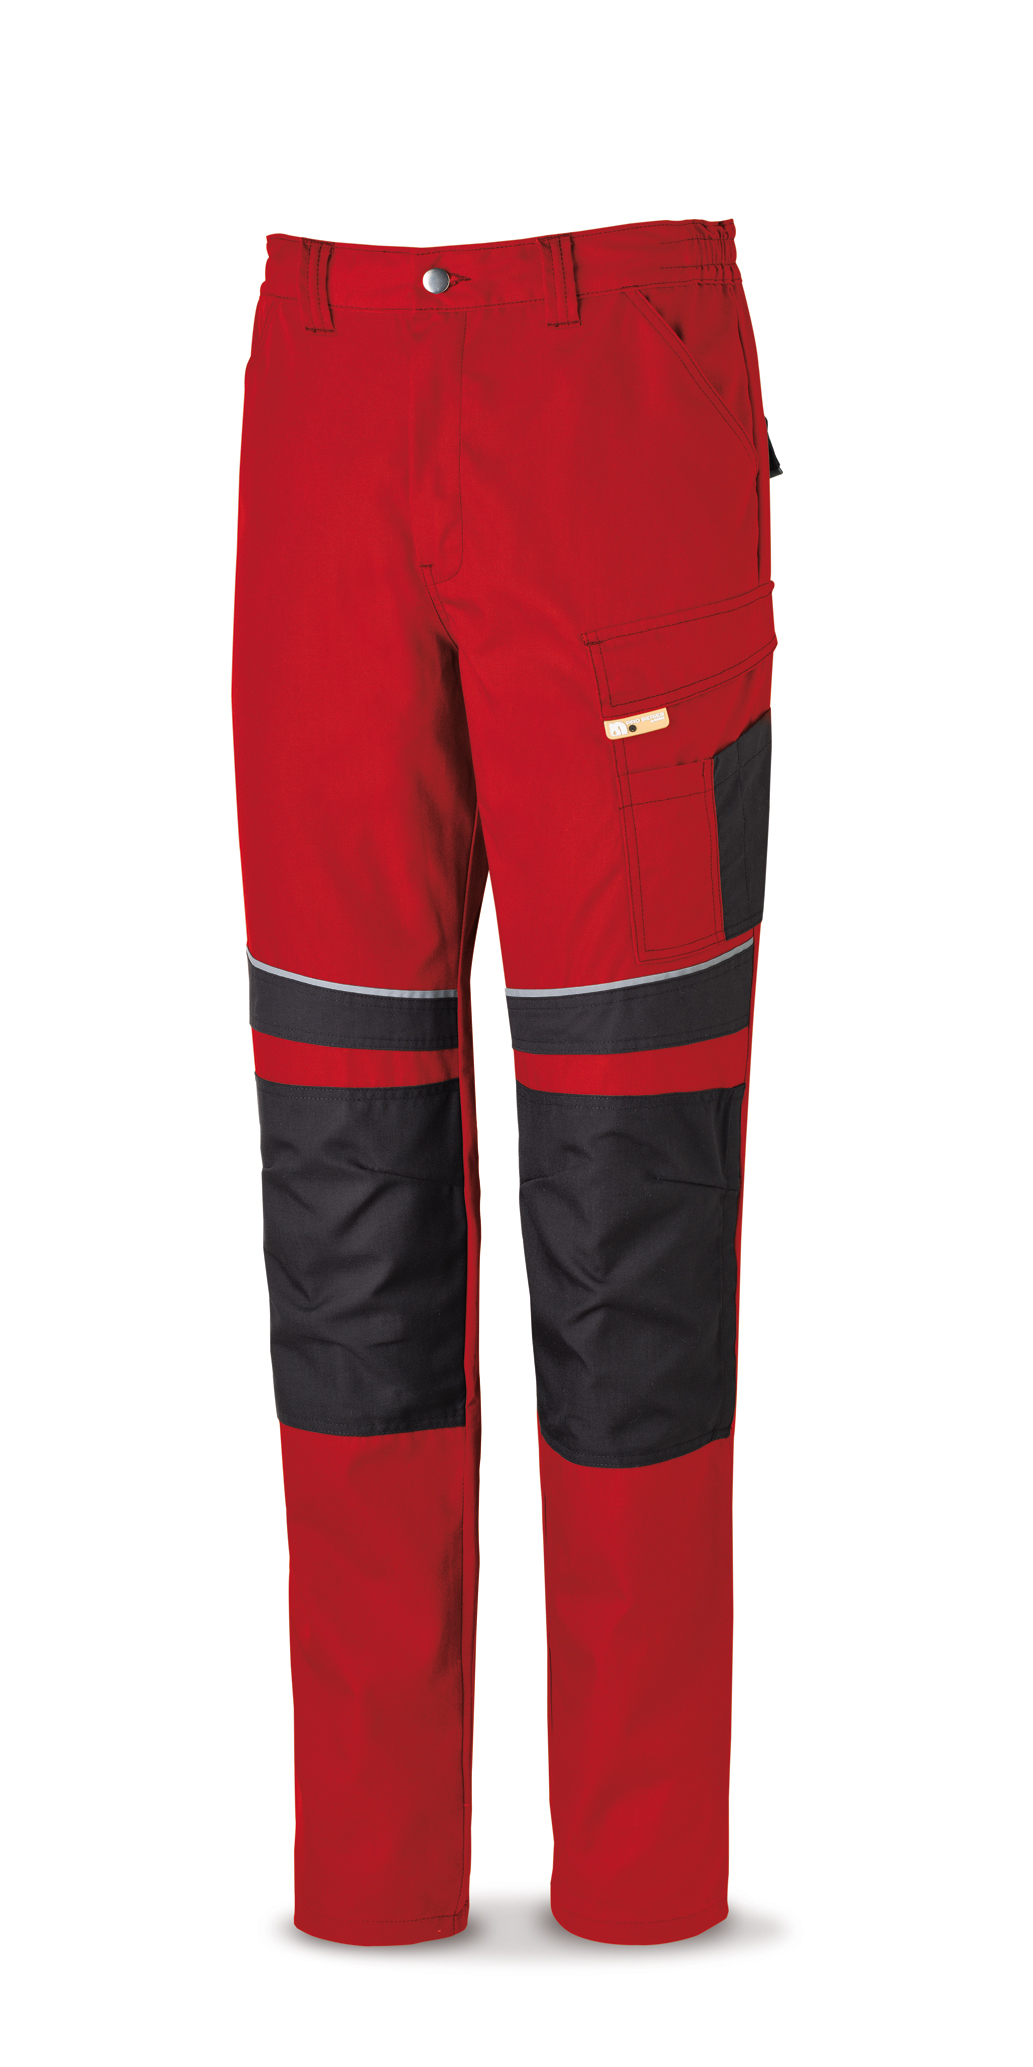 588-PRN Vestuario Laboral Pro Series Pantalón tergal canvas 245 g. Color  rojo/negro.